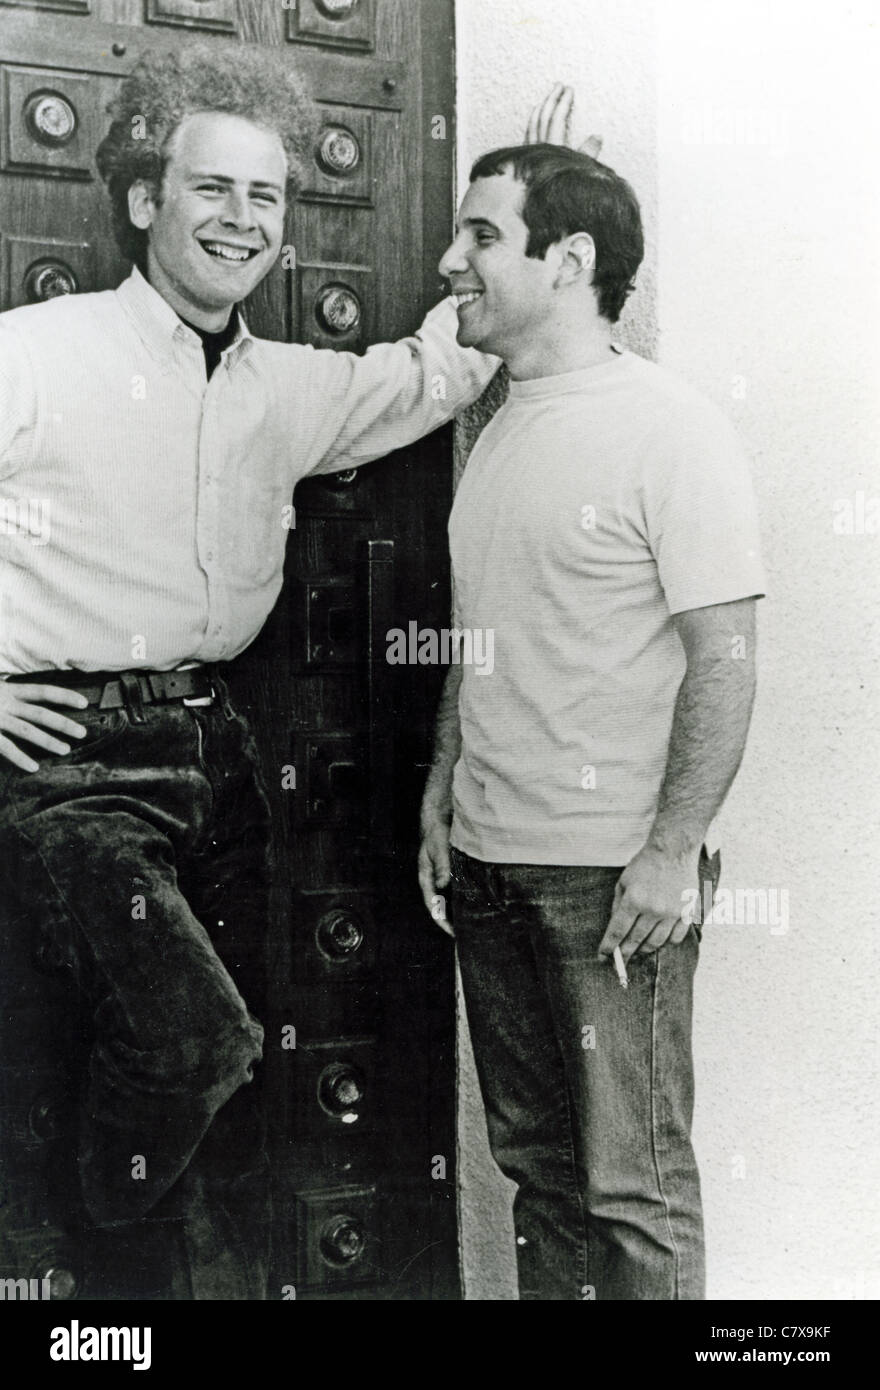 SIMON AND GARFUNKEL foto promozionale di Paul Simon a sinistra e Art Garfunkel circa 1960 Foto Stock